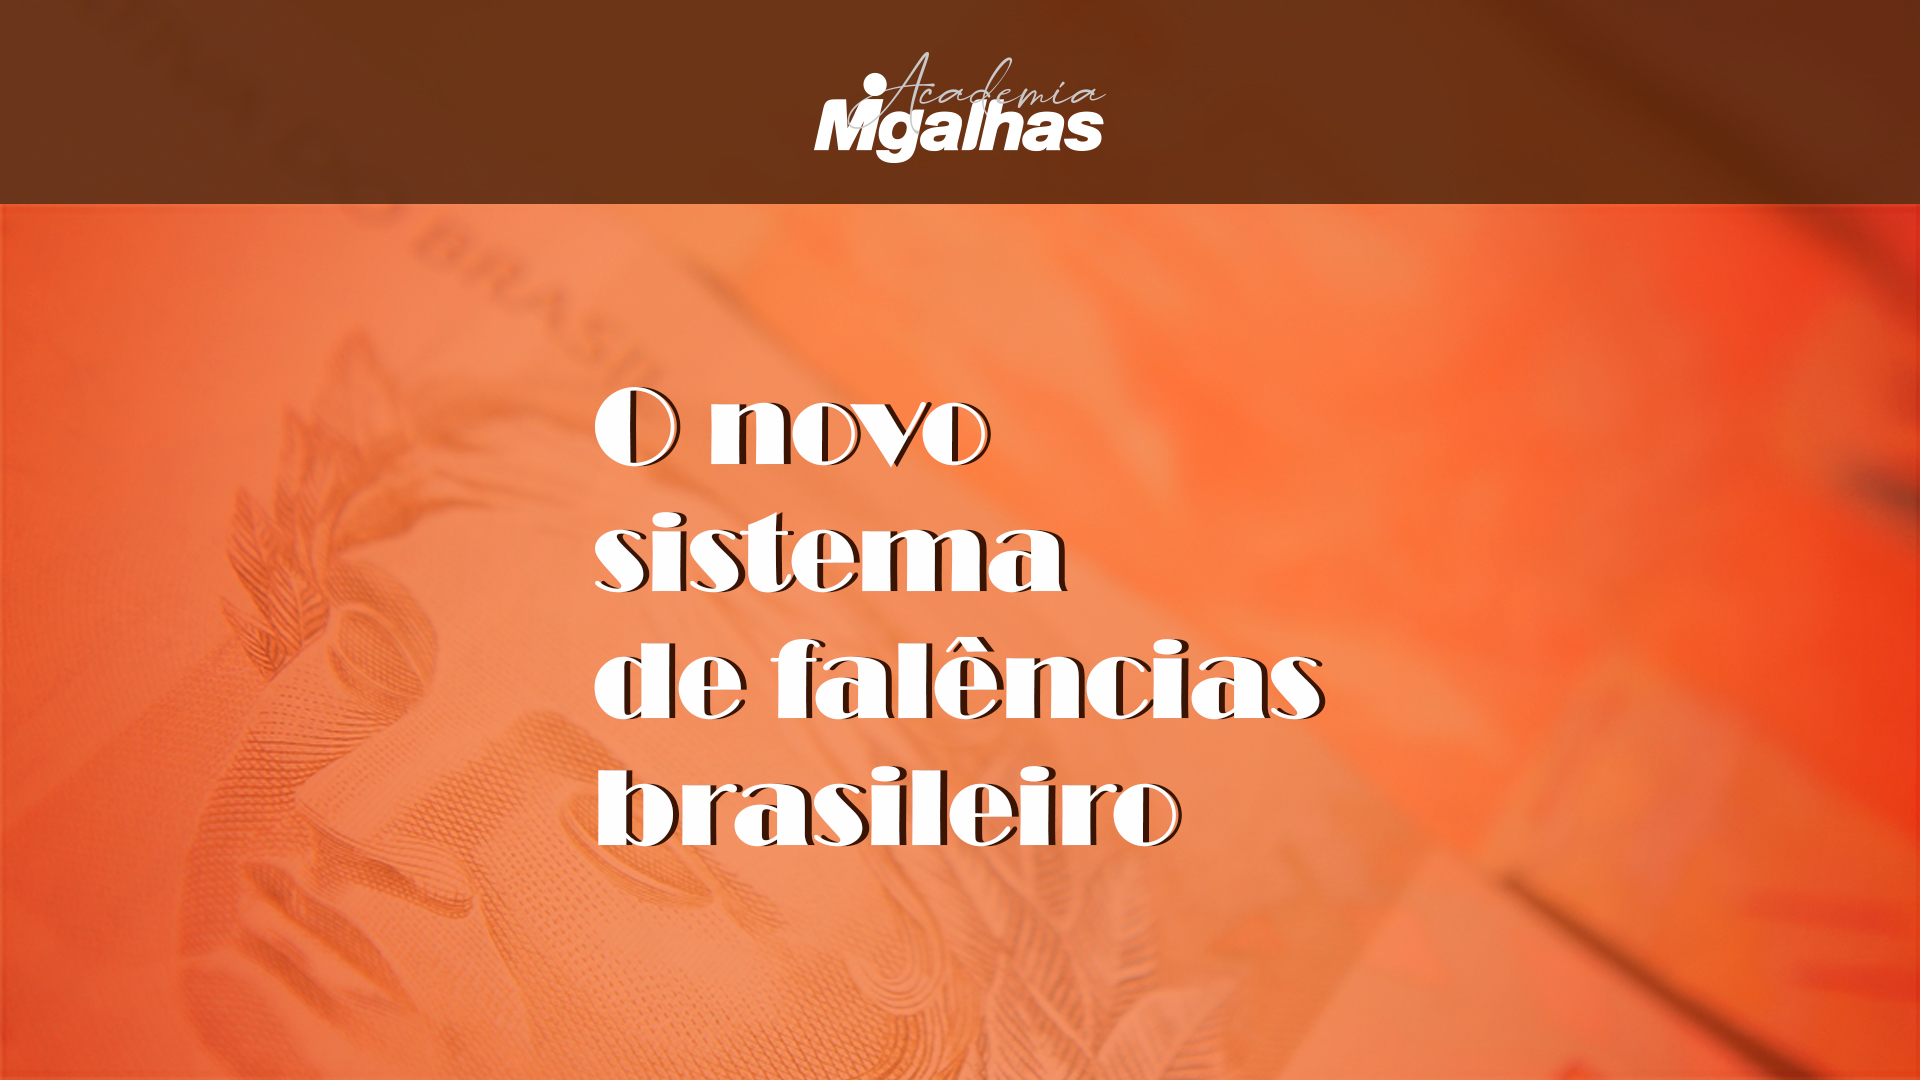 O novo sistema de falências brasileiro